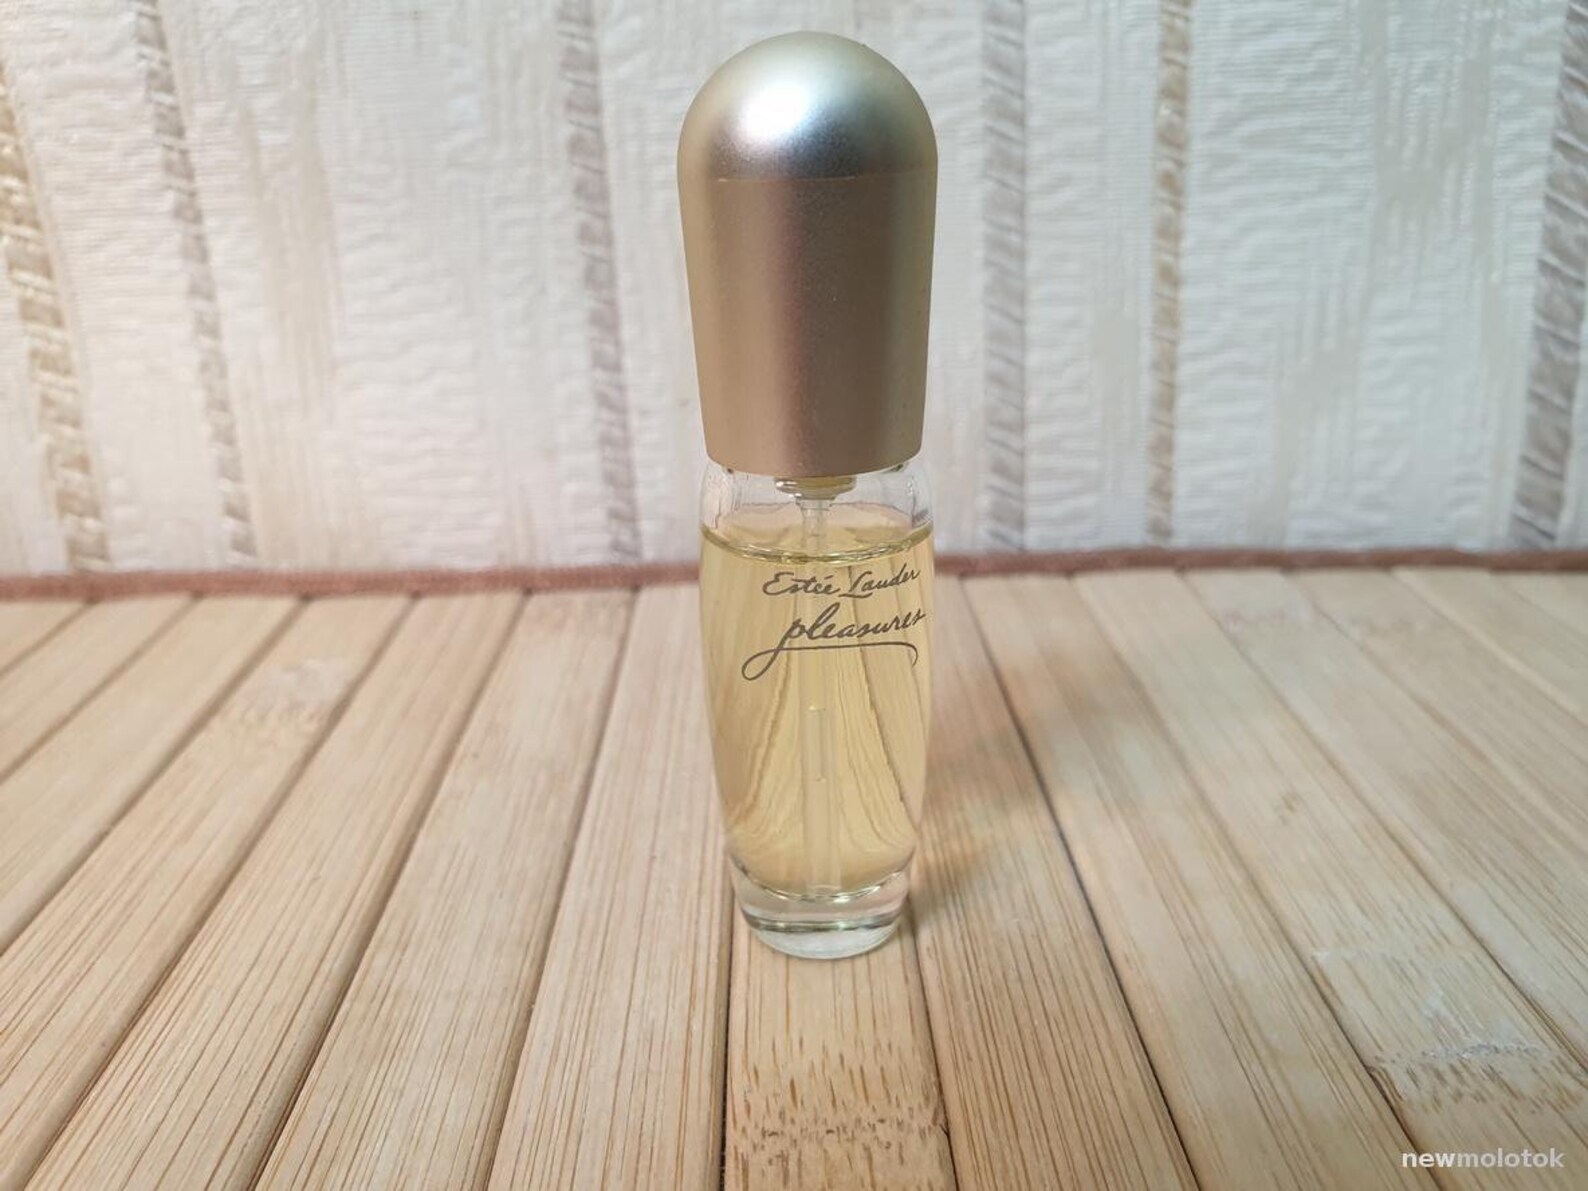 Pleasures Estee Lauder 4ml. Perfume Vintage | Etsy